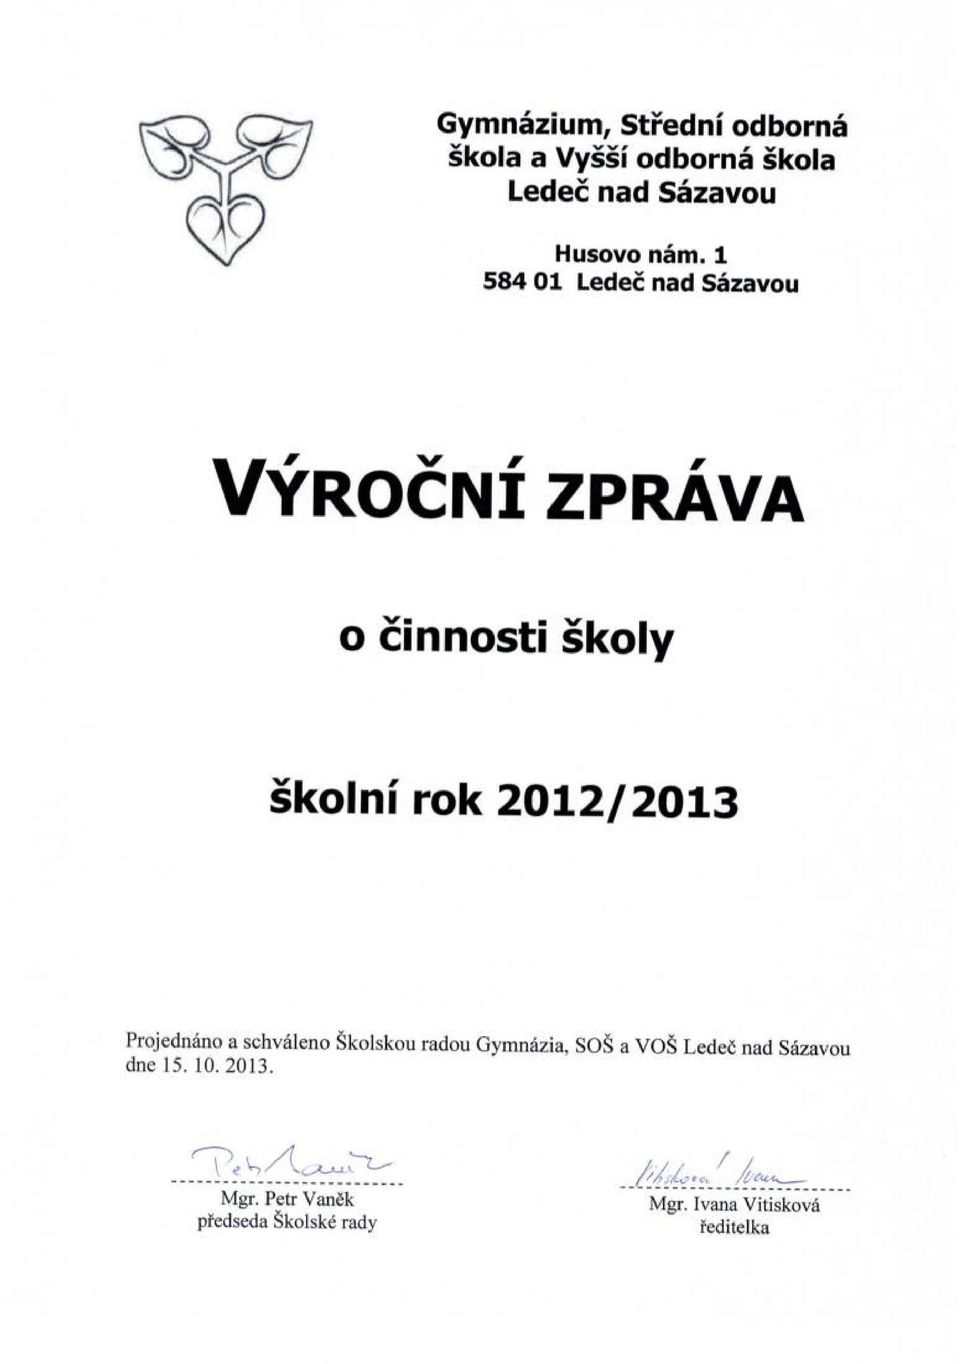 2012/2013 Projednáno a schváleno Školskou radou ymnázia, SOŠ a VOŠ Ledeč nad